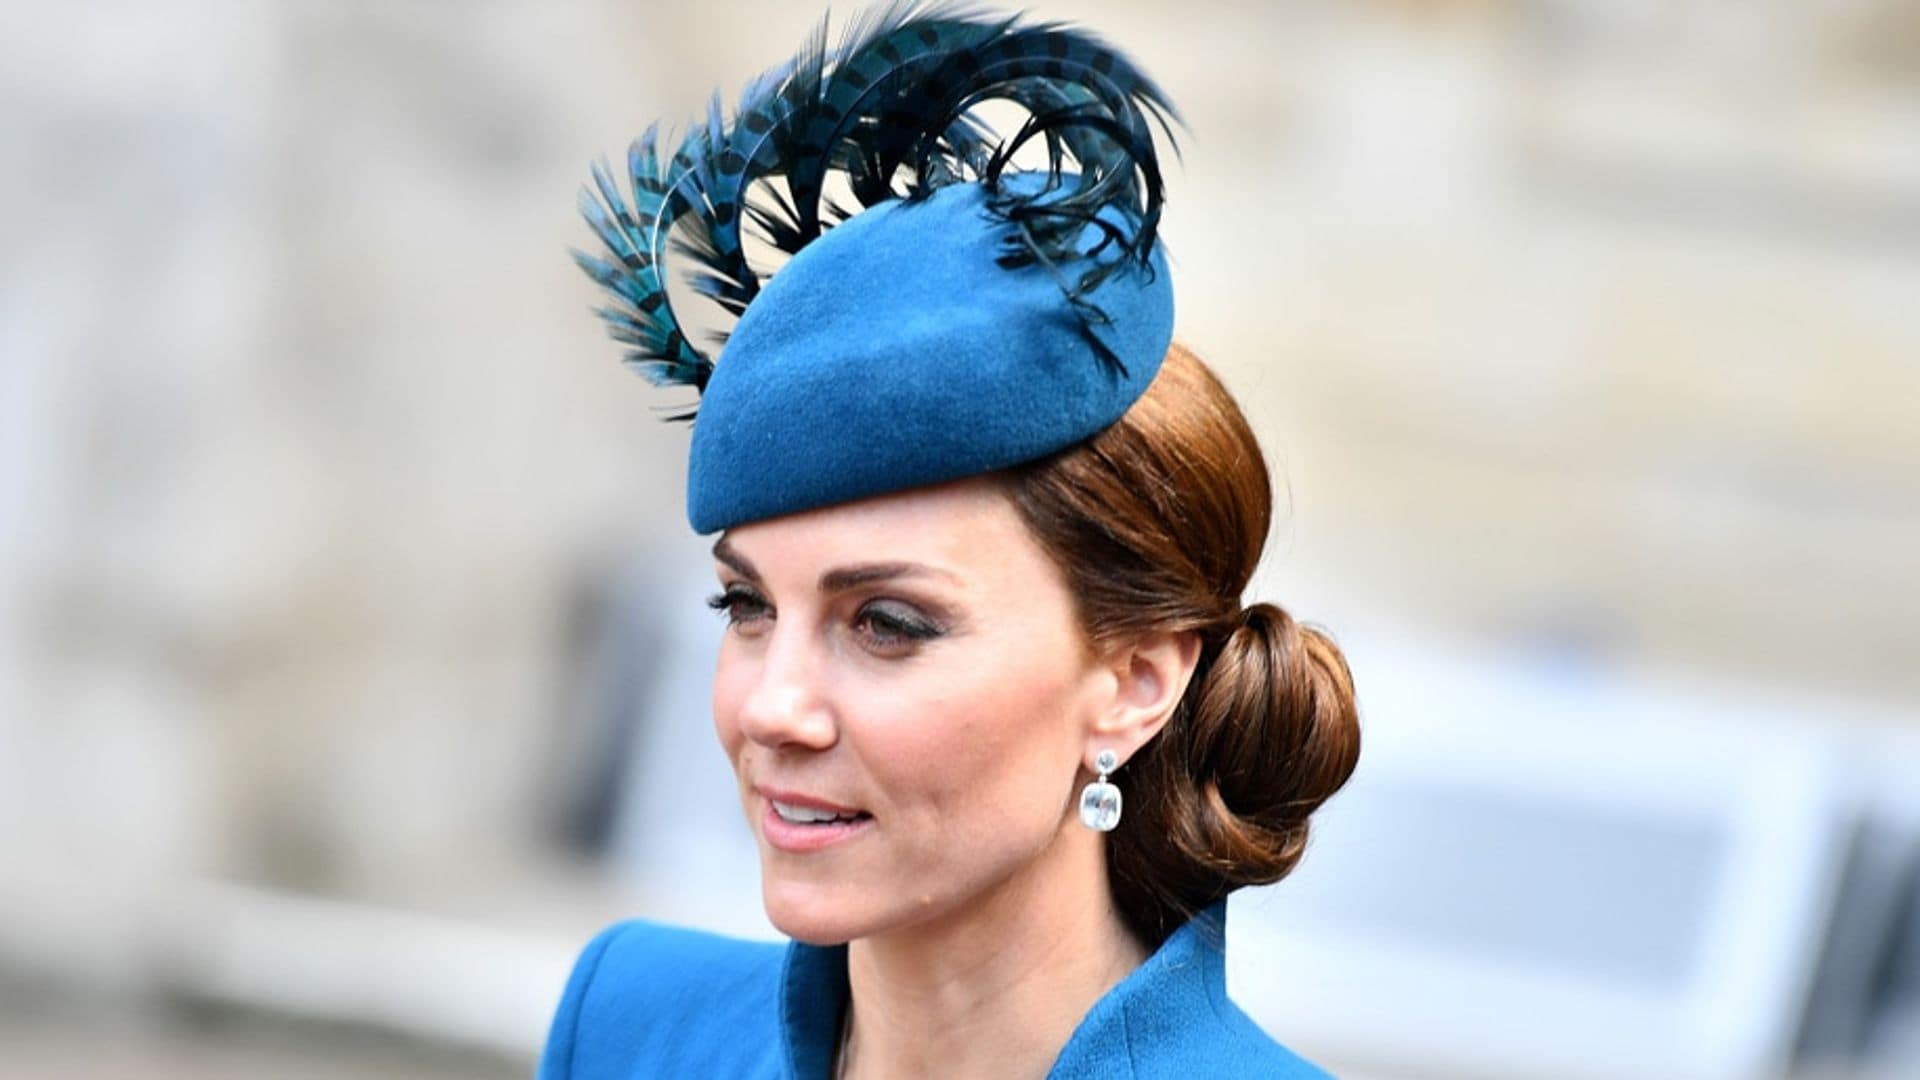 Royal hat designer Rosie Rubin talks designing hats for Kate Middleton and other British royals